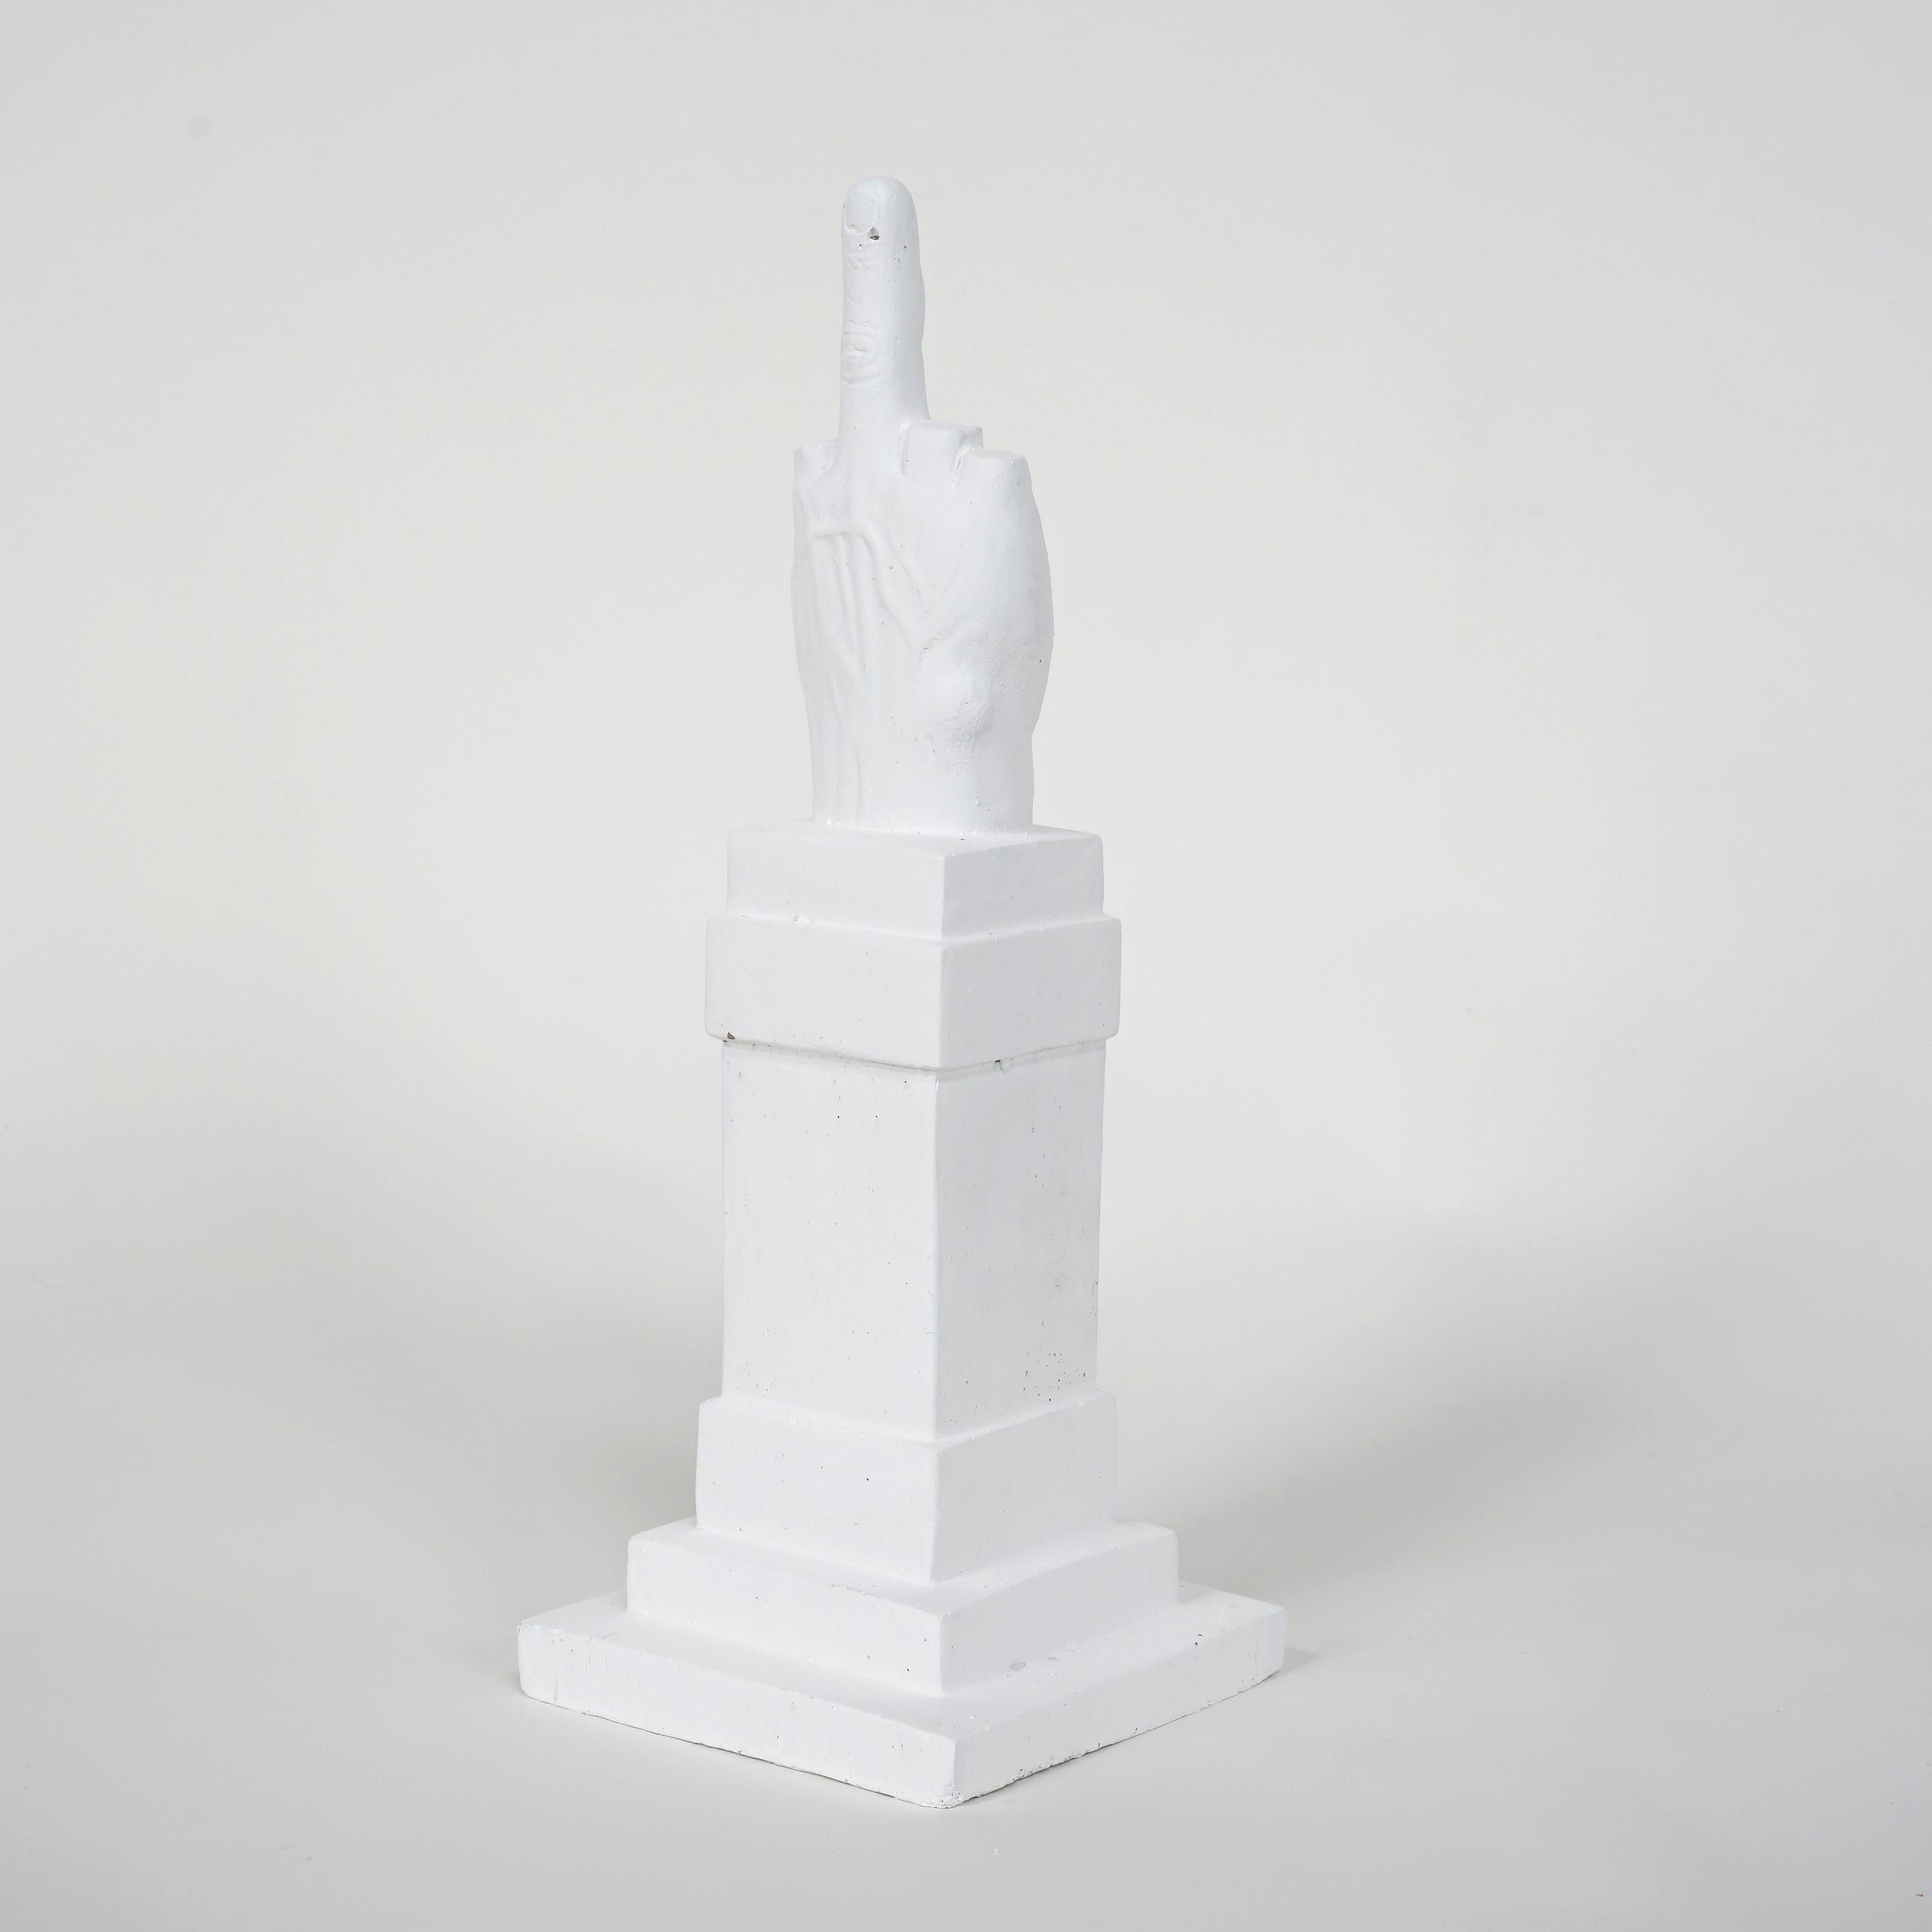 Médias de l'œuvre d'art
Maurizio Cattelan
L.O.V. E. White
2014
Sculpture en béton
40 × 18 × 18 cm
(15.7 × 7.1 × 7.1 in)
Estampillé par la succession de l'artiste.
Edition de 200
En parfait état. 
Avec l'emballage original et accompagné d'un